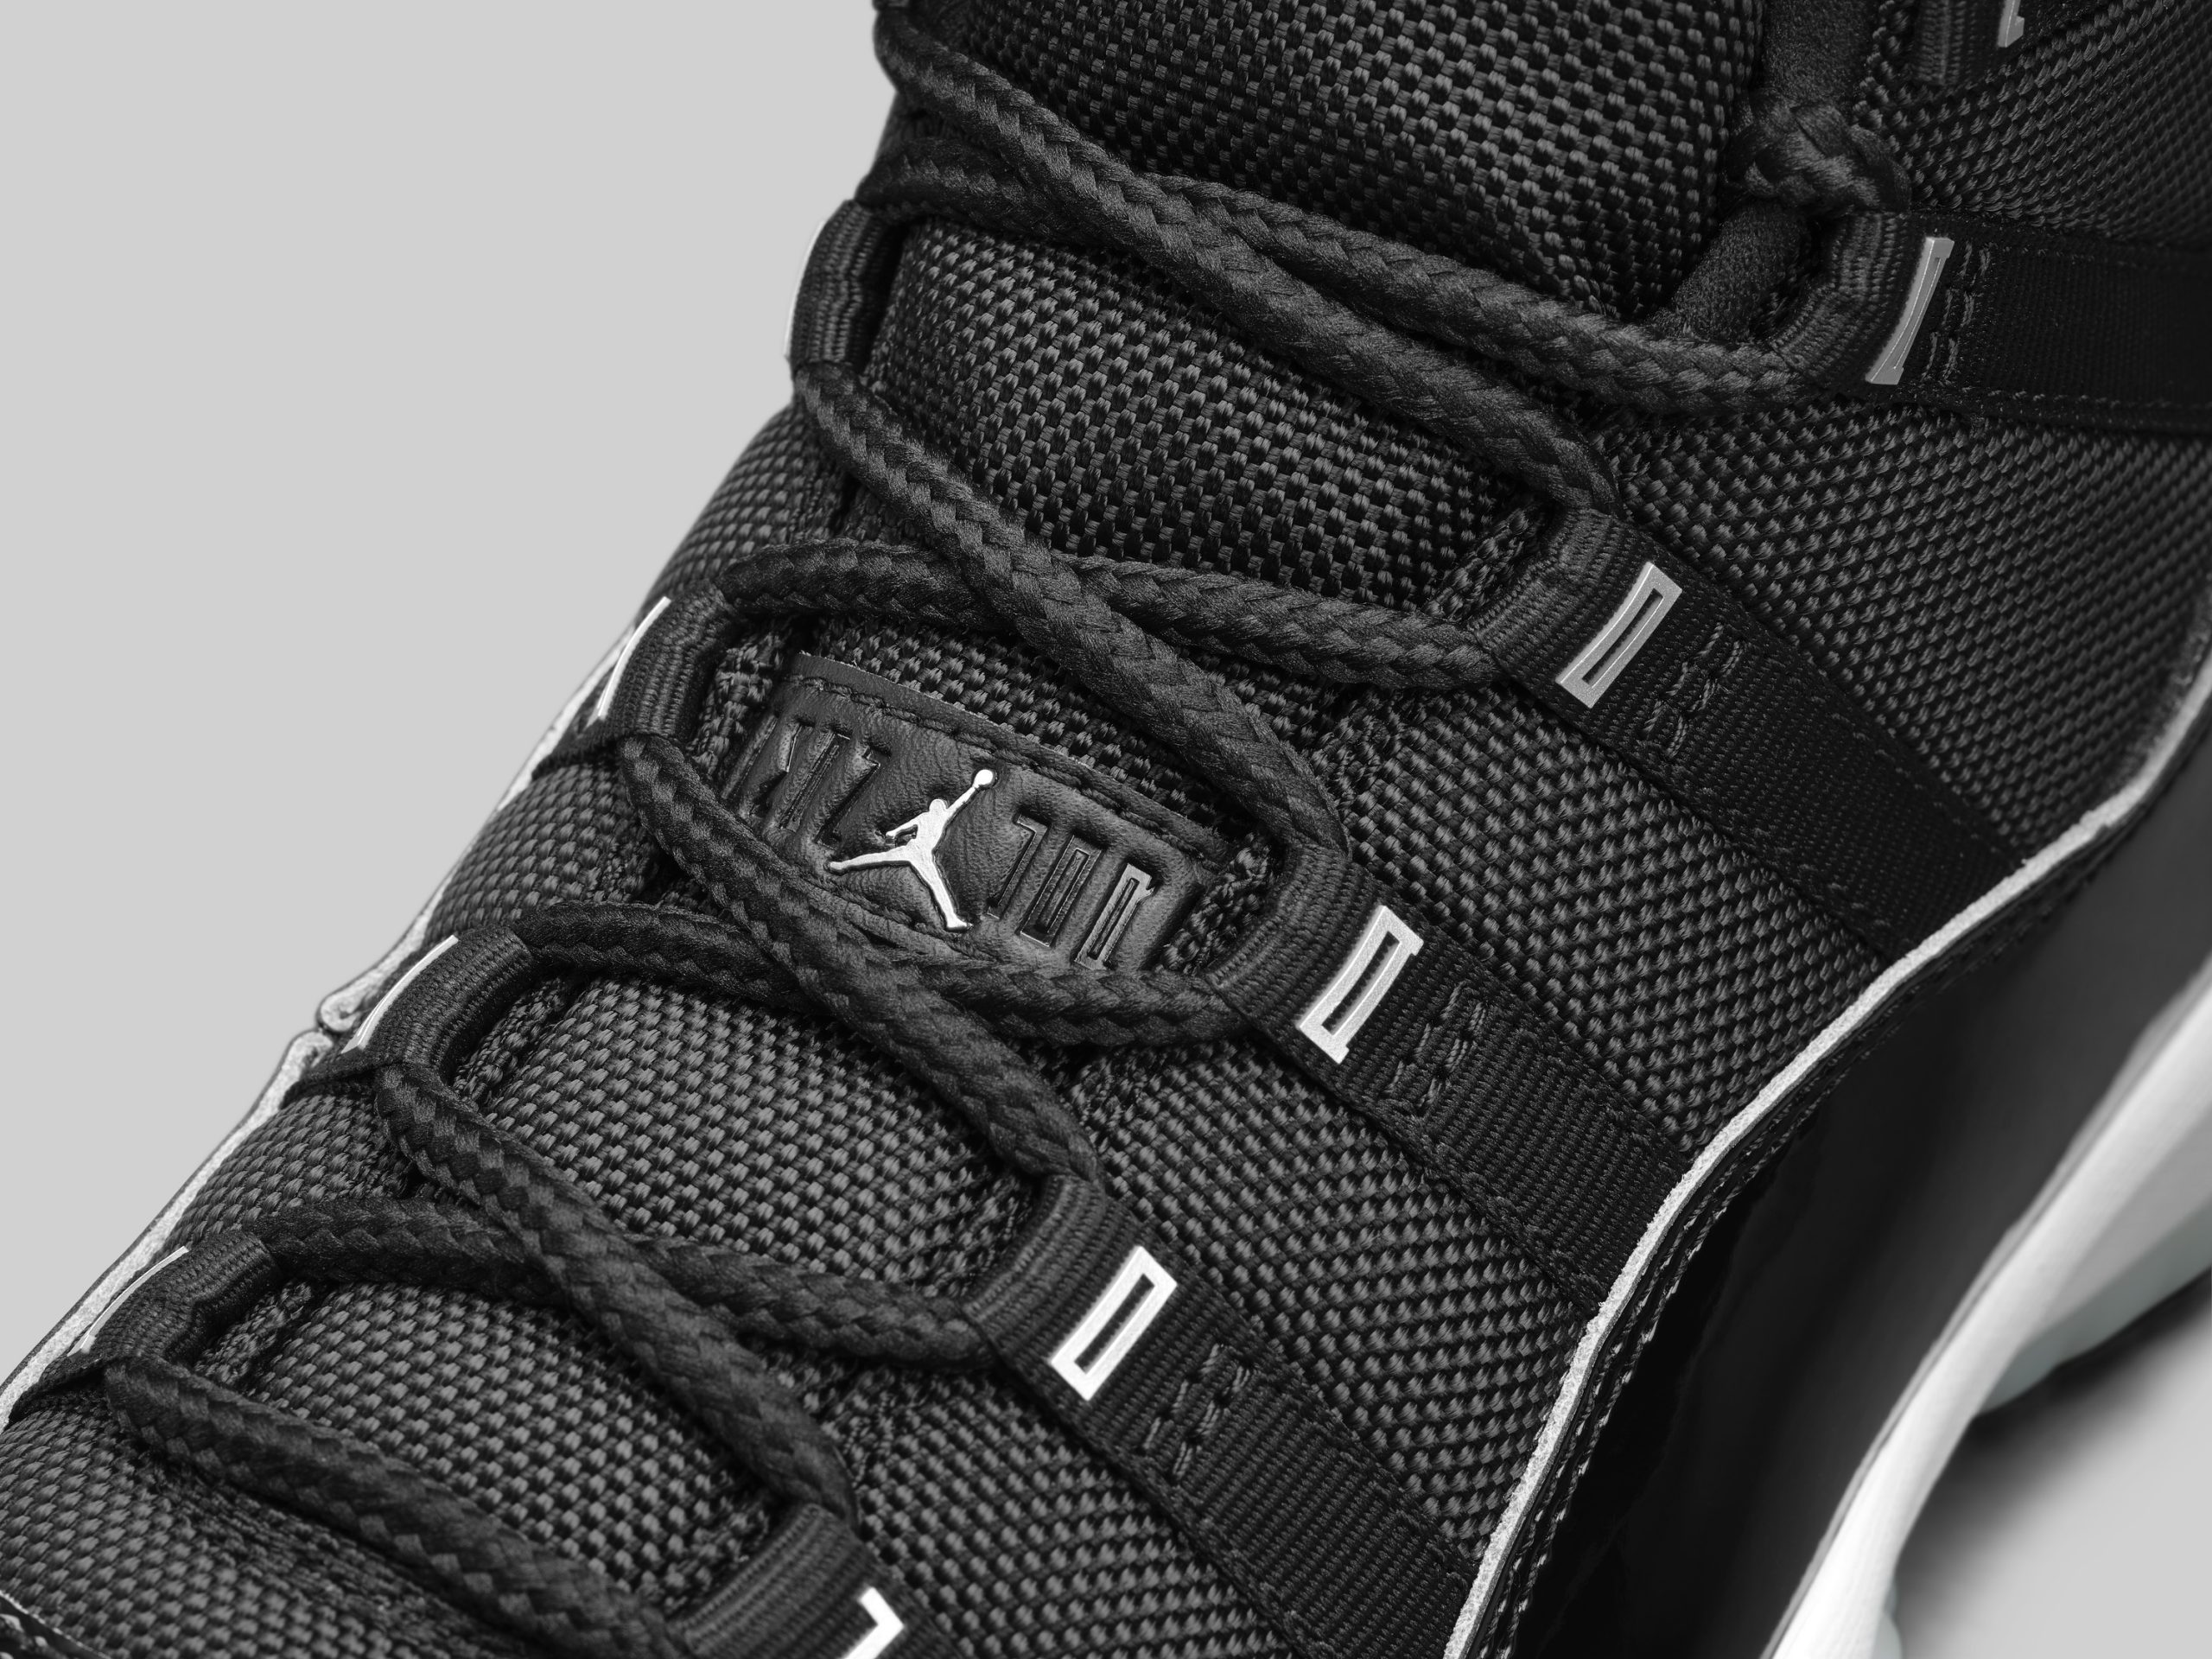 Nike Unveils the Air Jordan 11 “Jubilee” and Air Jordan 11 Adapt